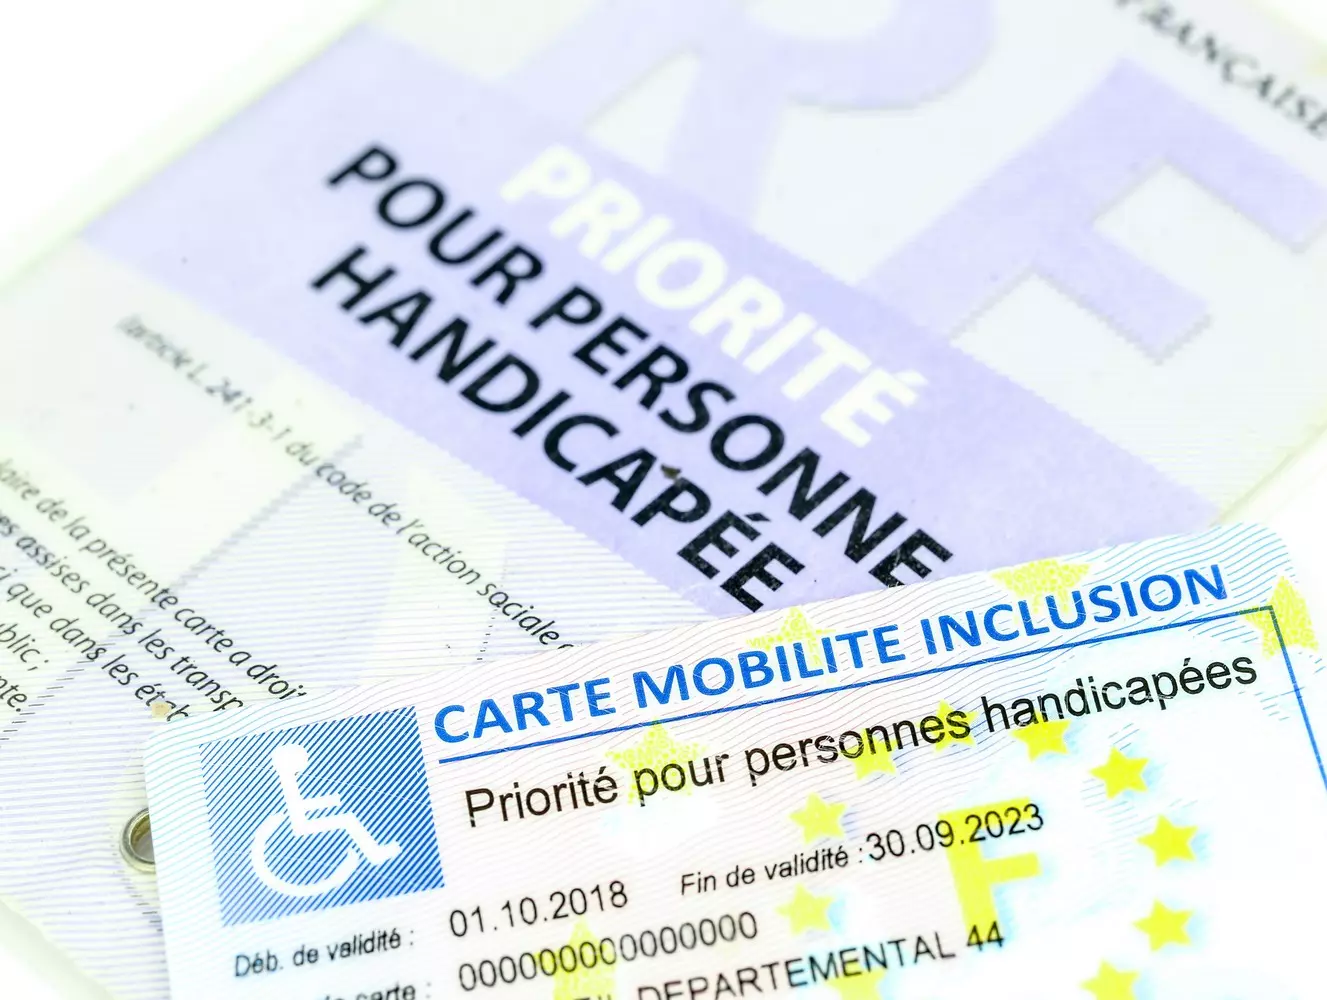 Carte mobilité inclusion : 6 questions-réponses